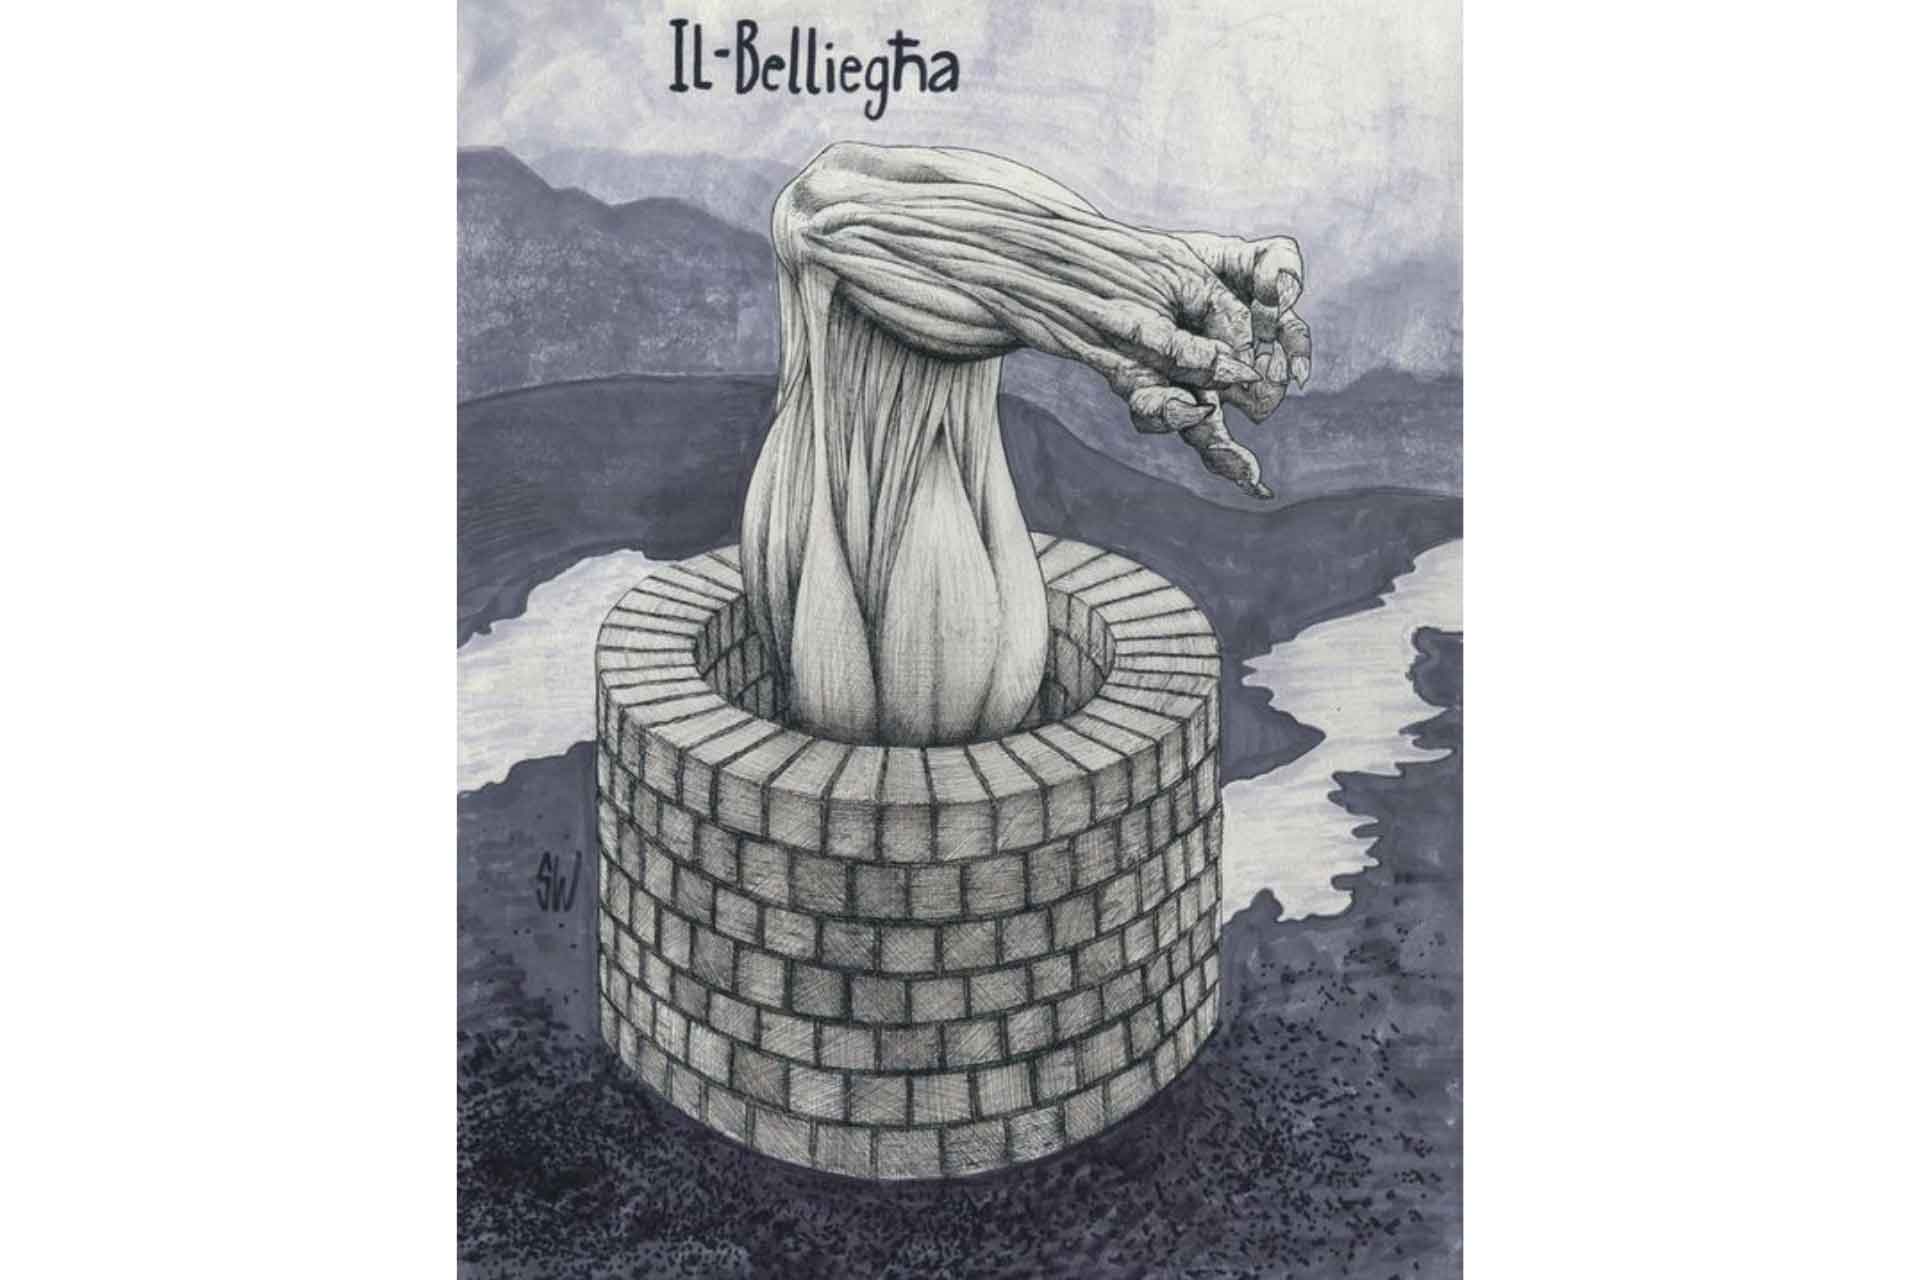 belligha maltese folklore malta monsters well